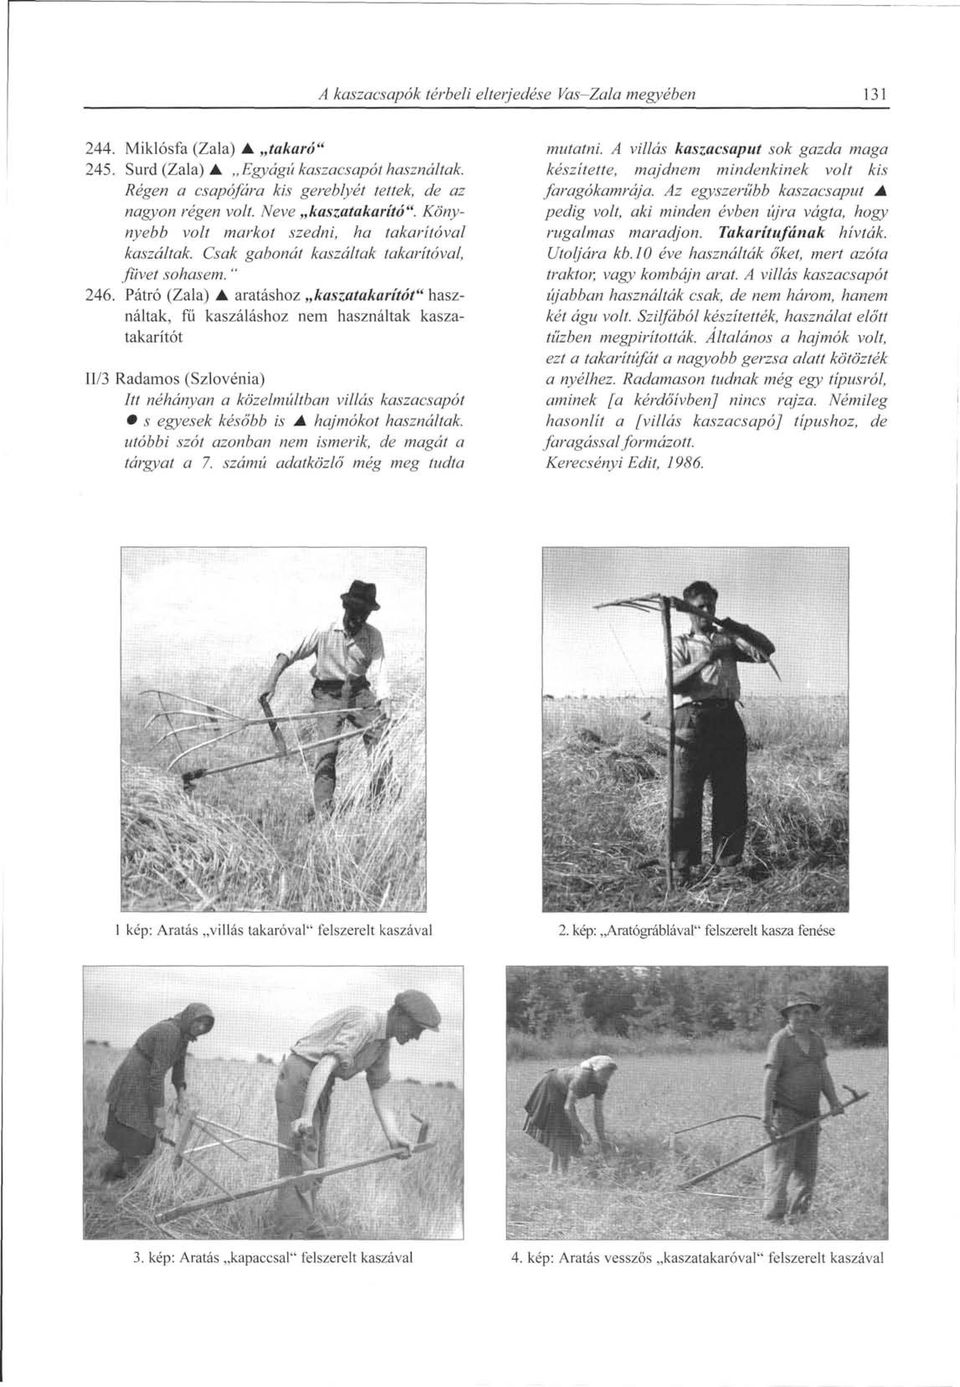 Pátró (Zala) A aratáshoz kaszatakarítót" használtak, fű kaszáláshoz nem használtak kaszatakarítót 11/3 Radamos (Szlovénia) Itt néhányan a közelmúltban villás kaszacsapót s egyesek később is A